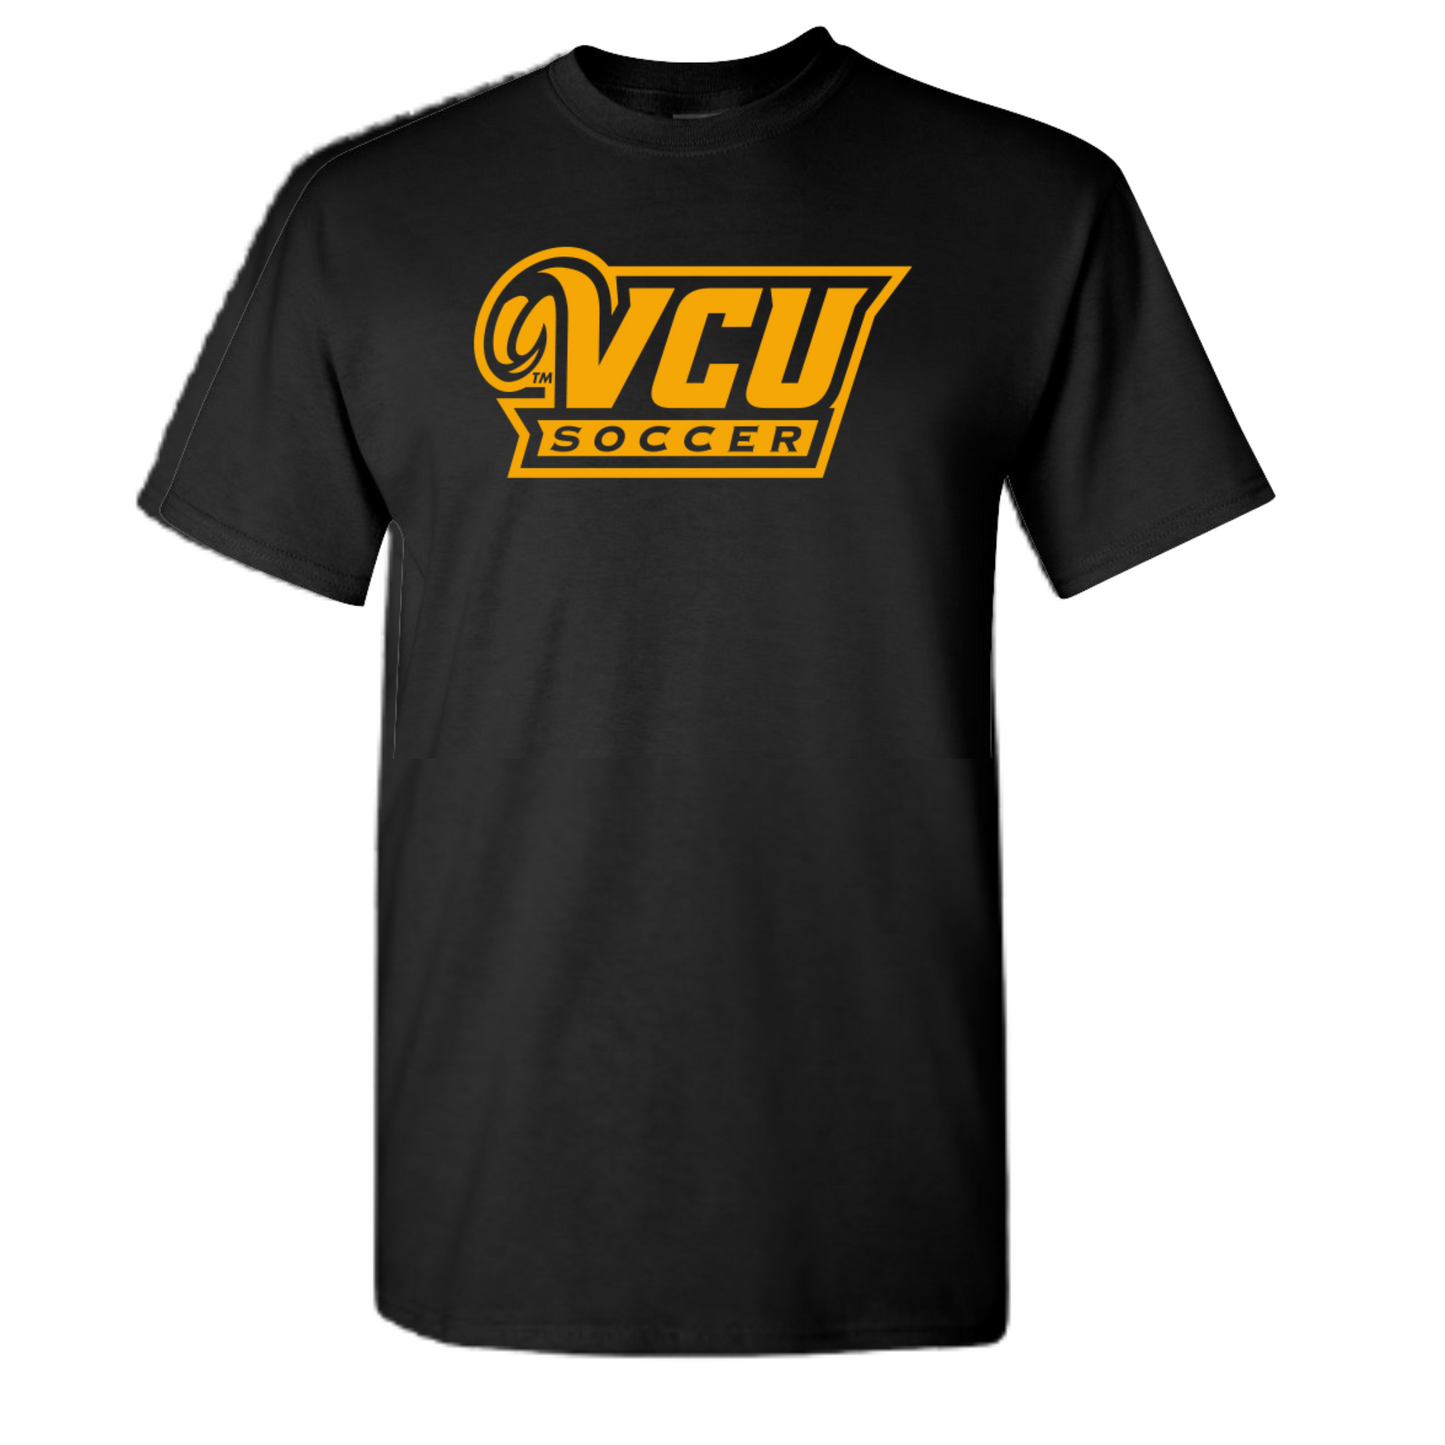 VCU Soccer T-shirt